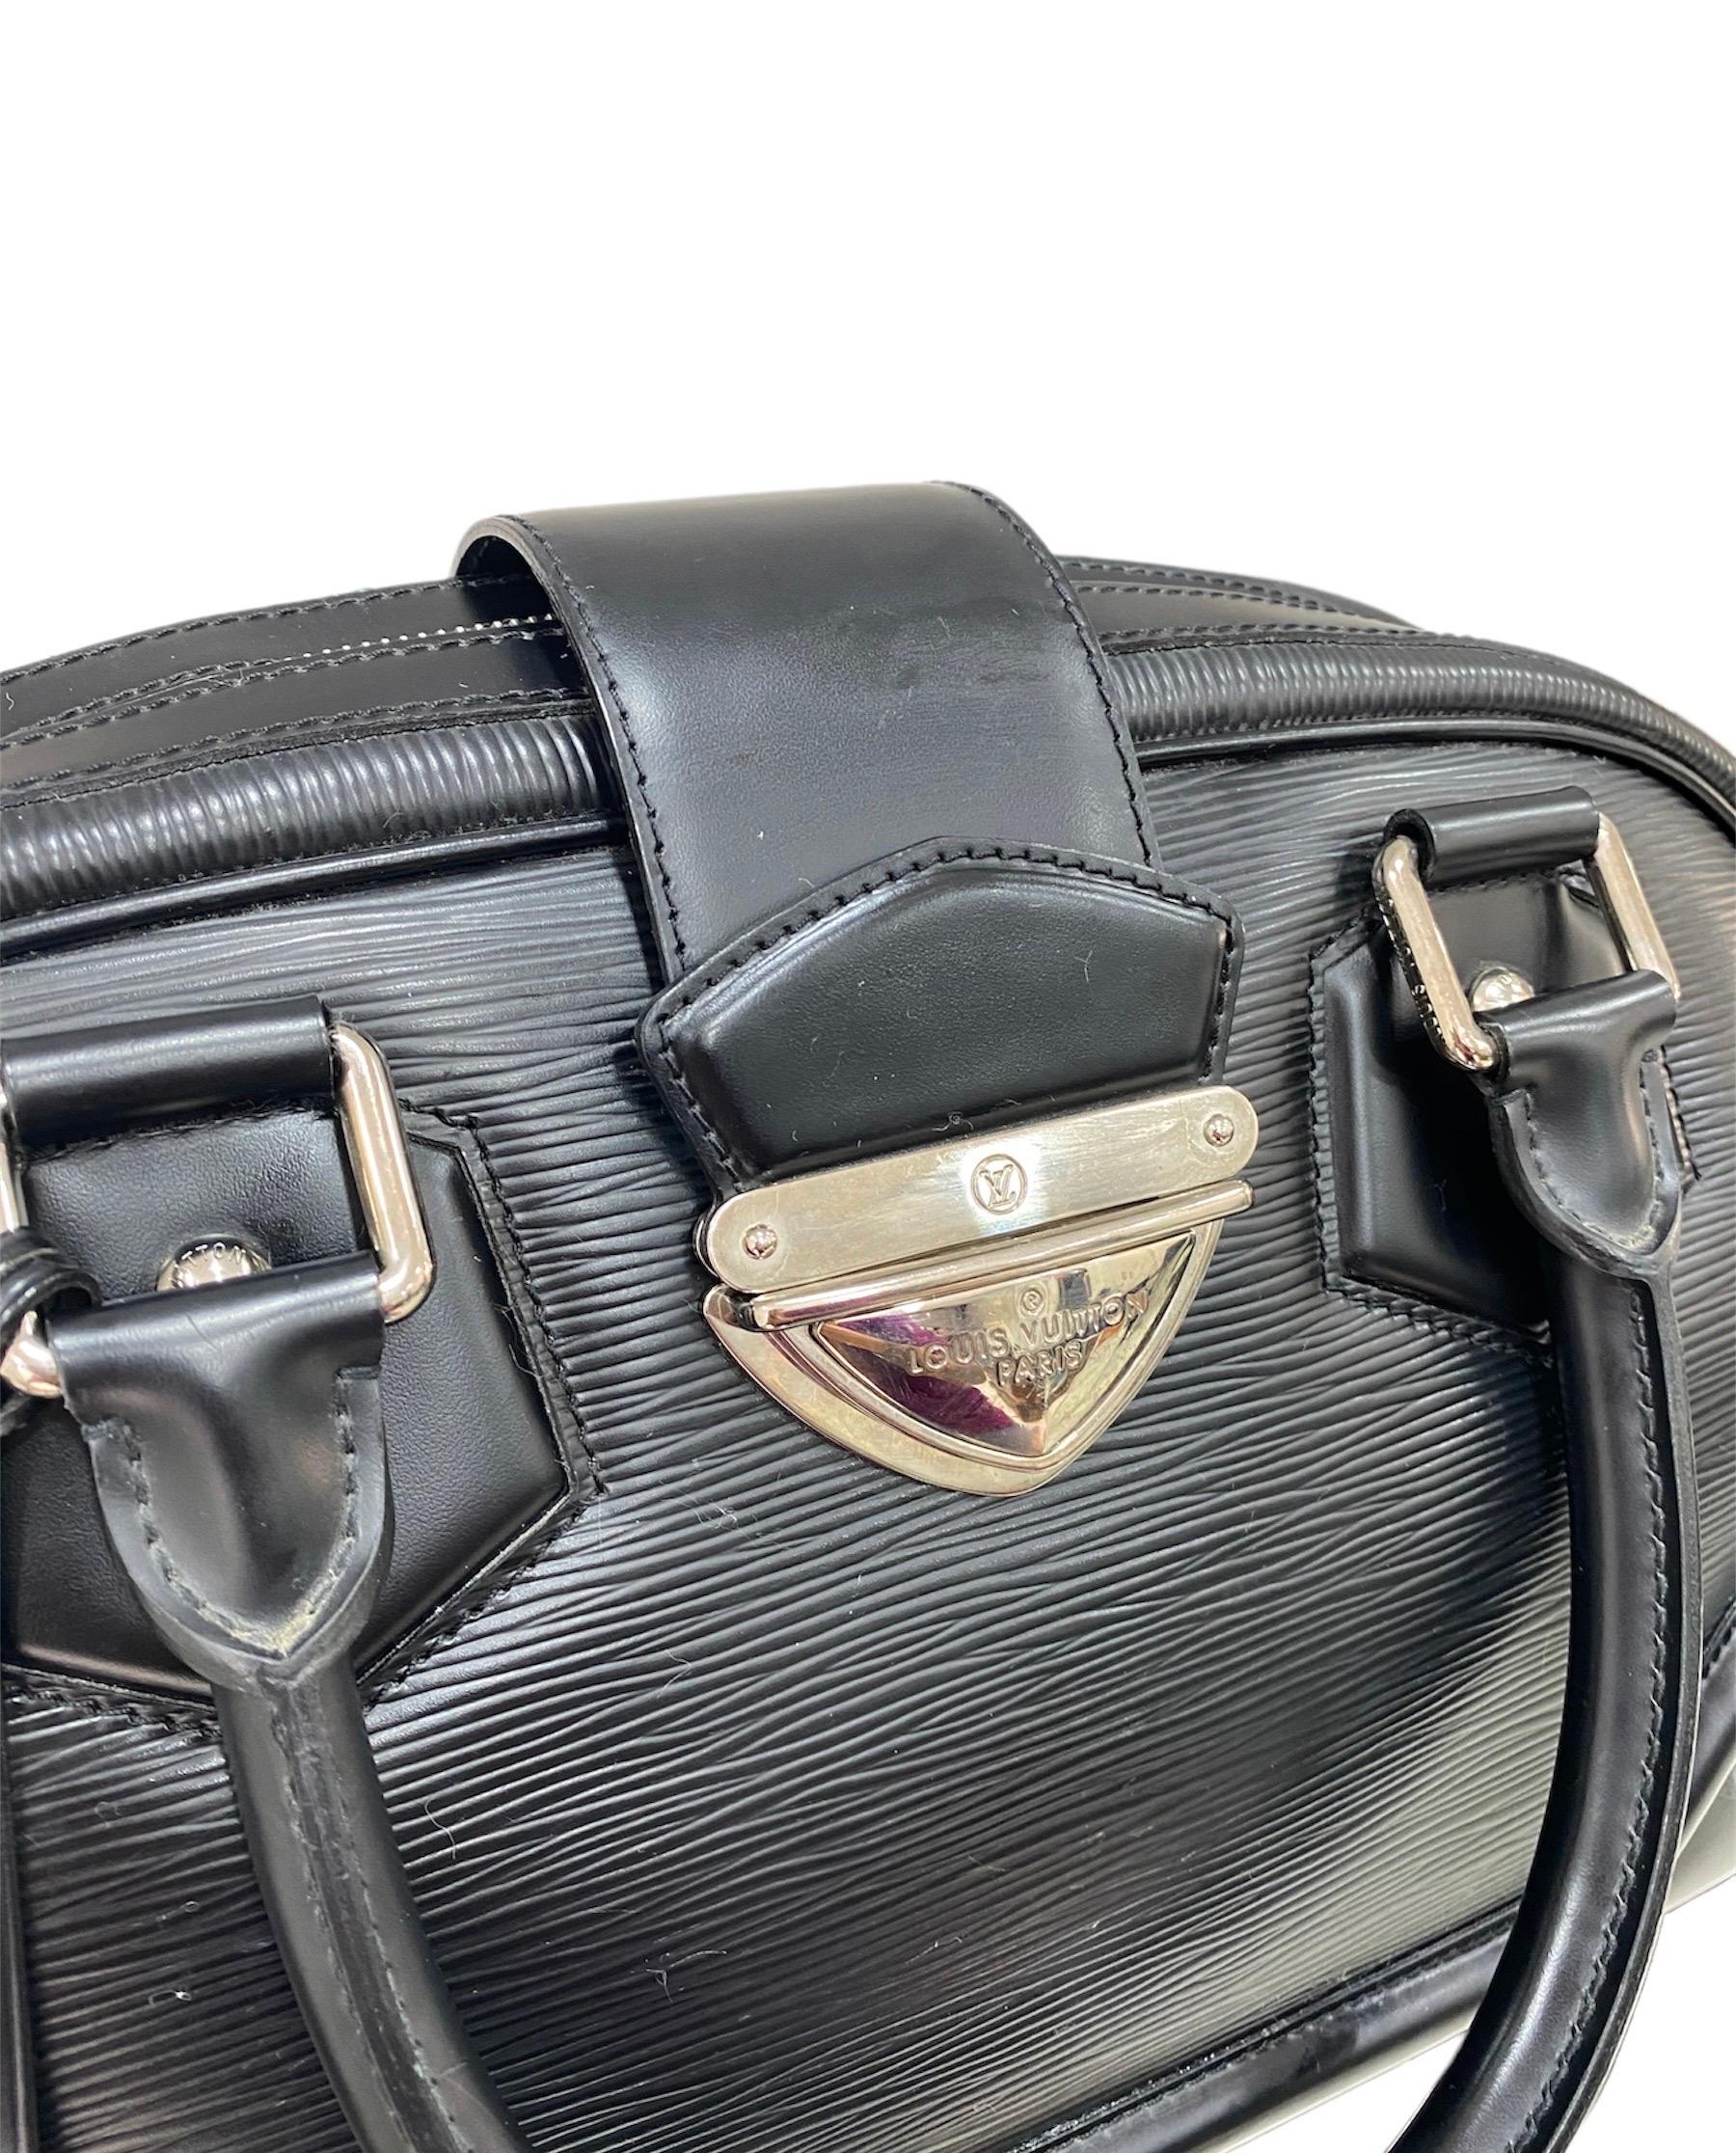 Louis Vuitton Black Epi Leather Sac Montaigne Handbag at 1stDibs